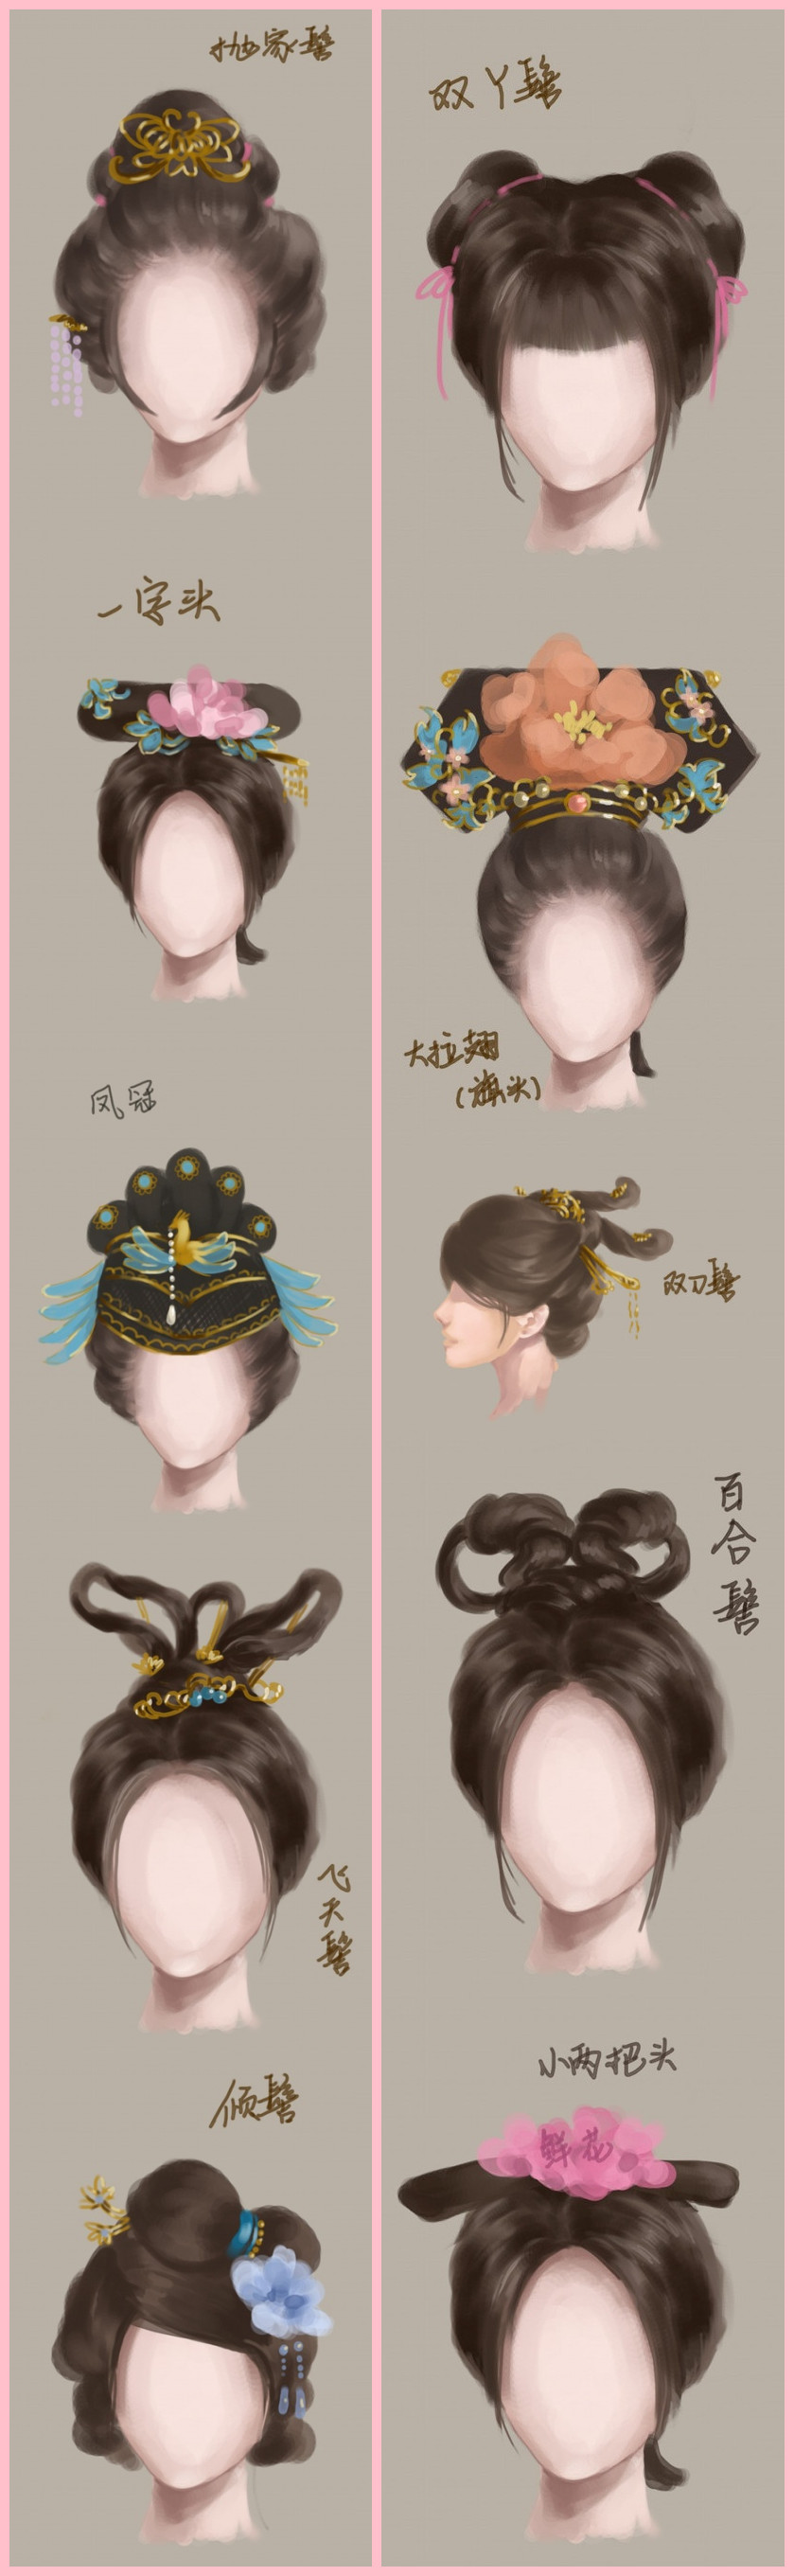 图解中国古代女子发型2